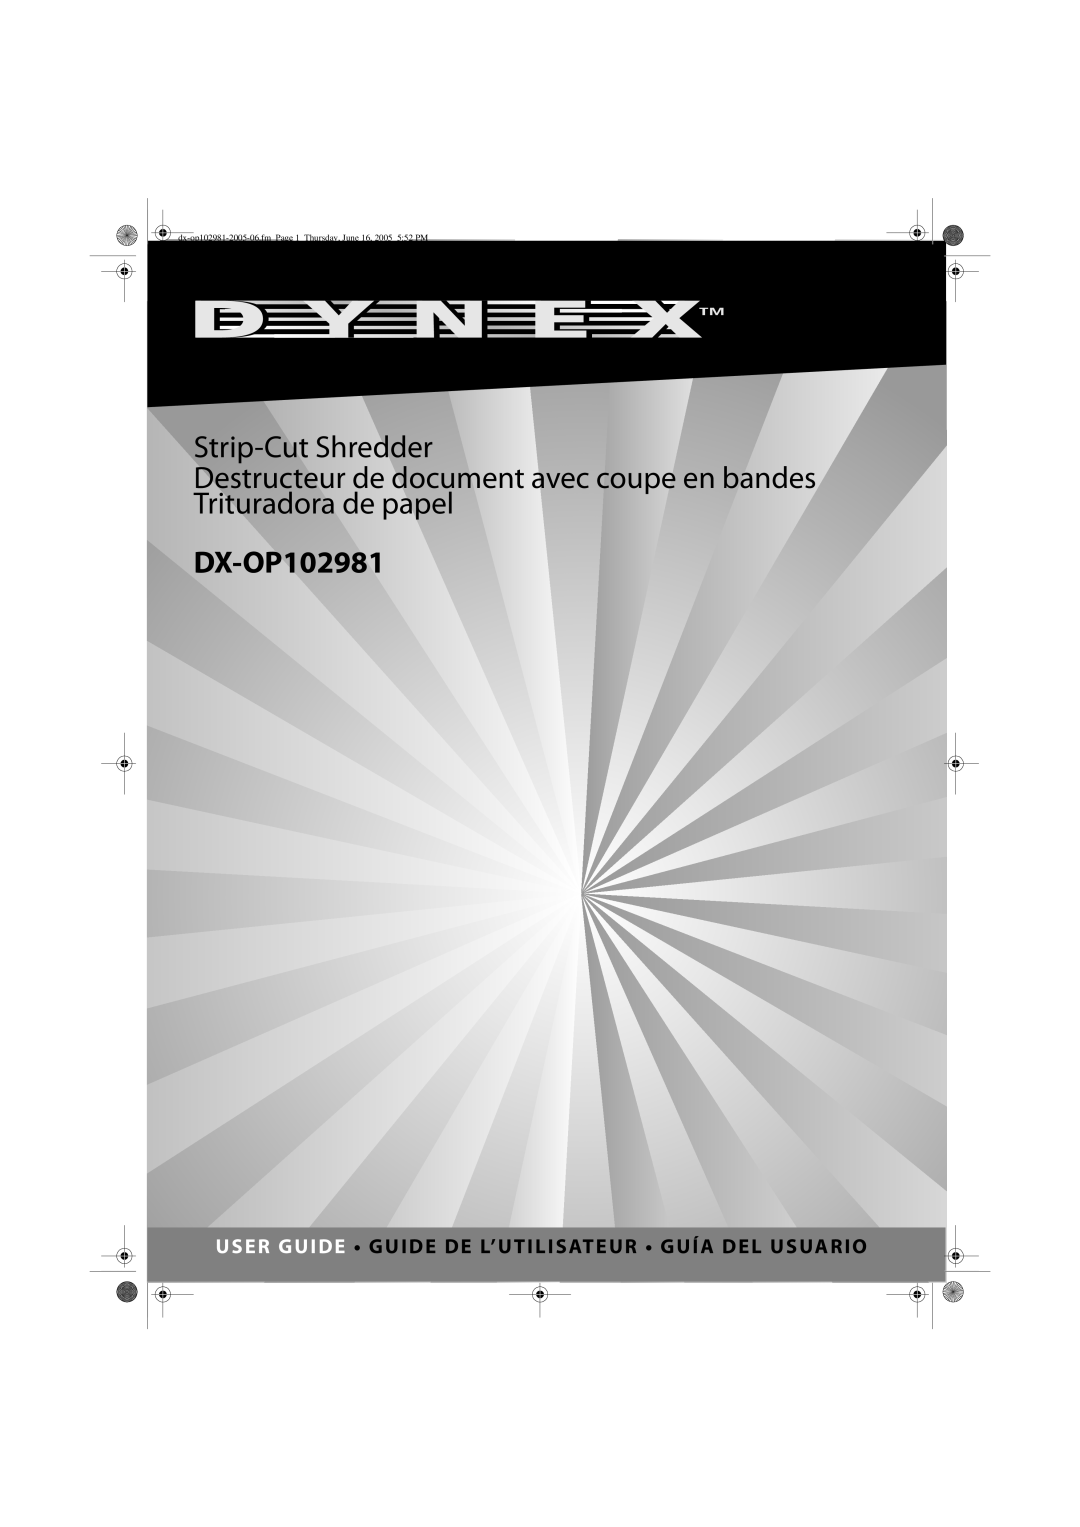 Dynex DX-OP102981 manual Strip-Cut Shredder, Destructeur de document avec coupe en bandes Trituradora de papel 